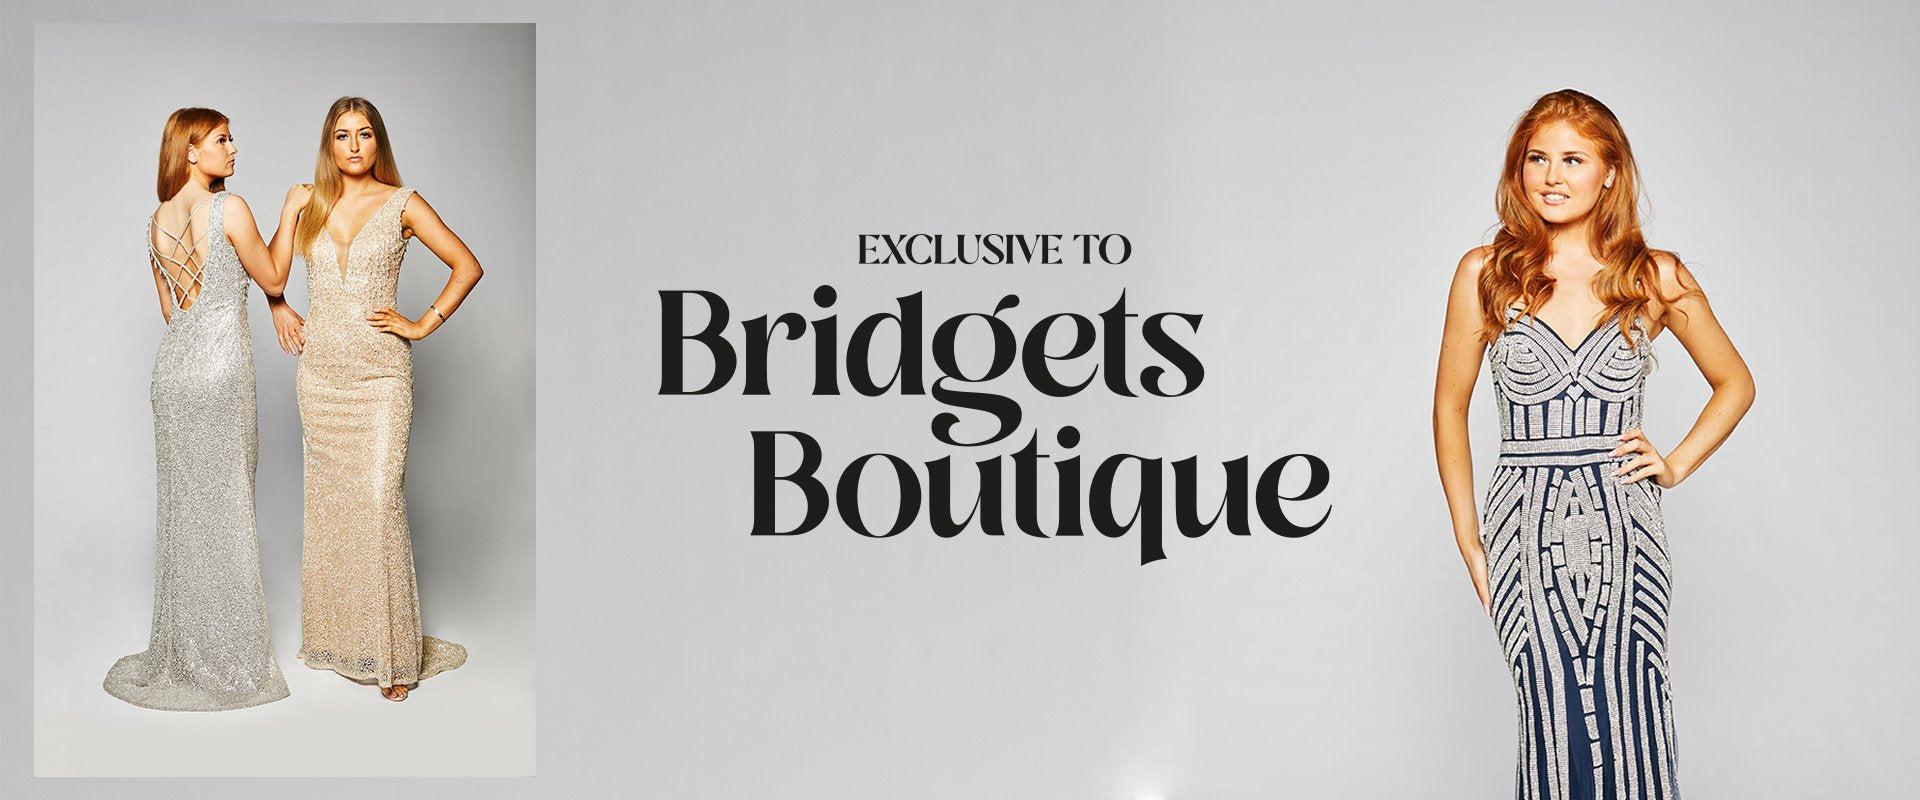 Exclusive to Bridget's Boutique